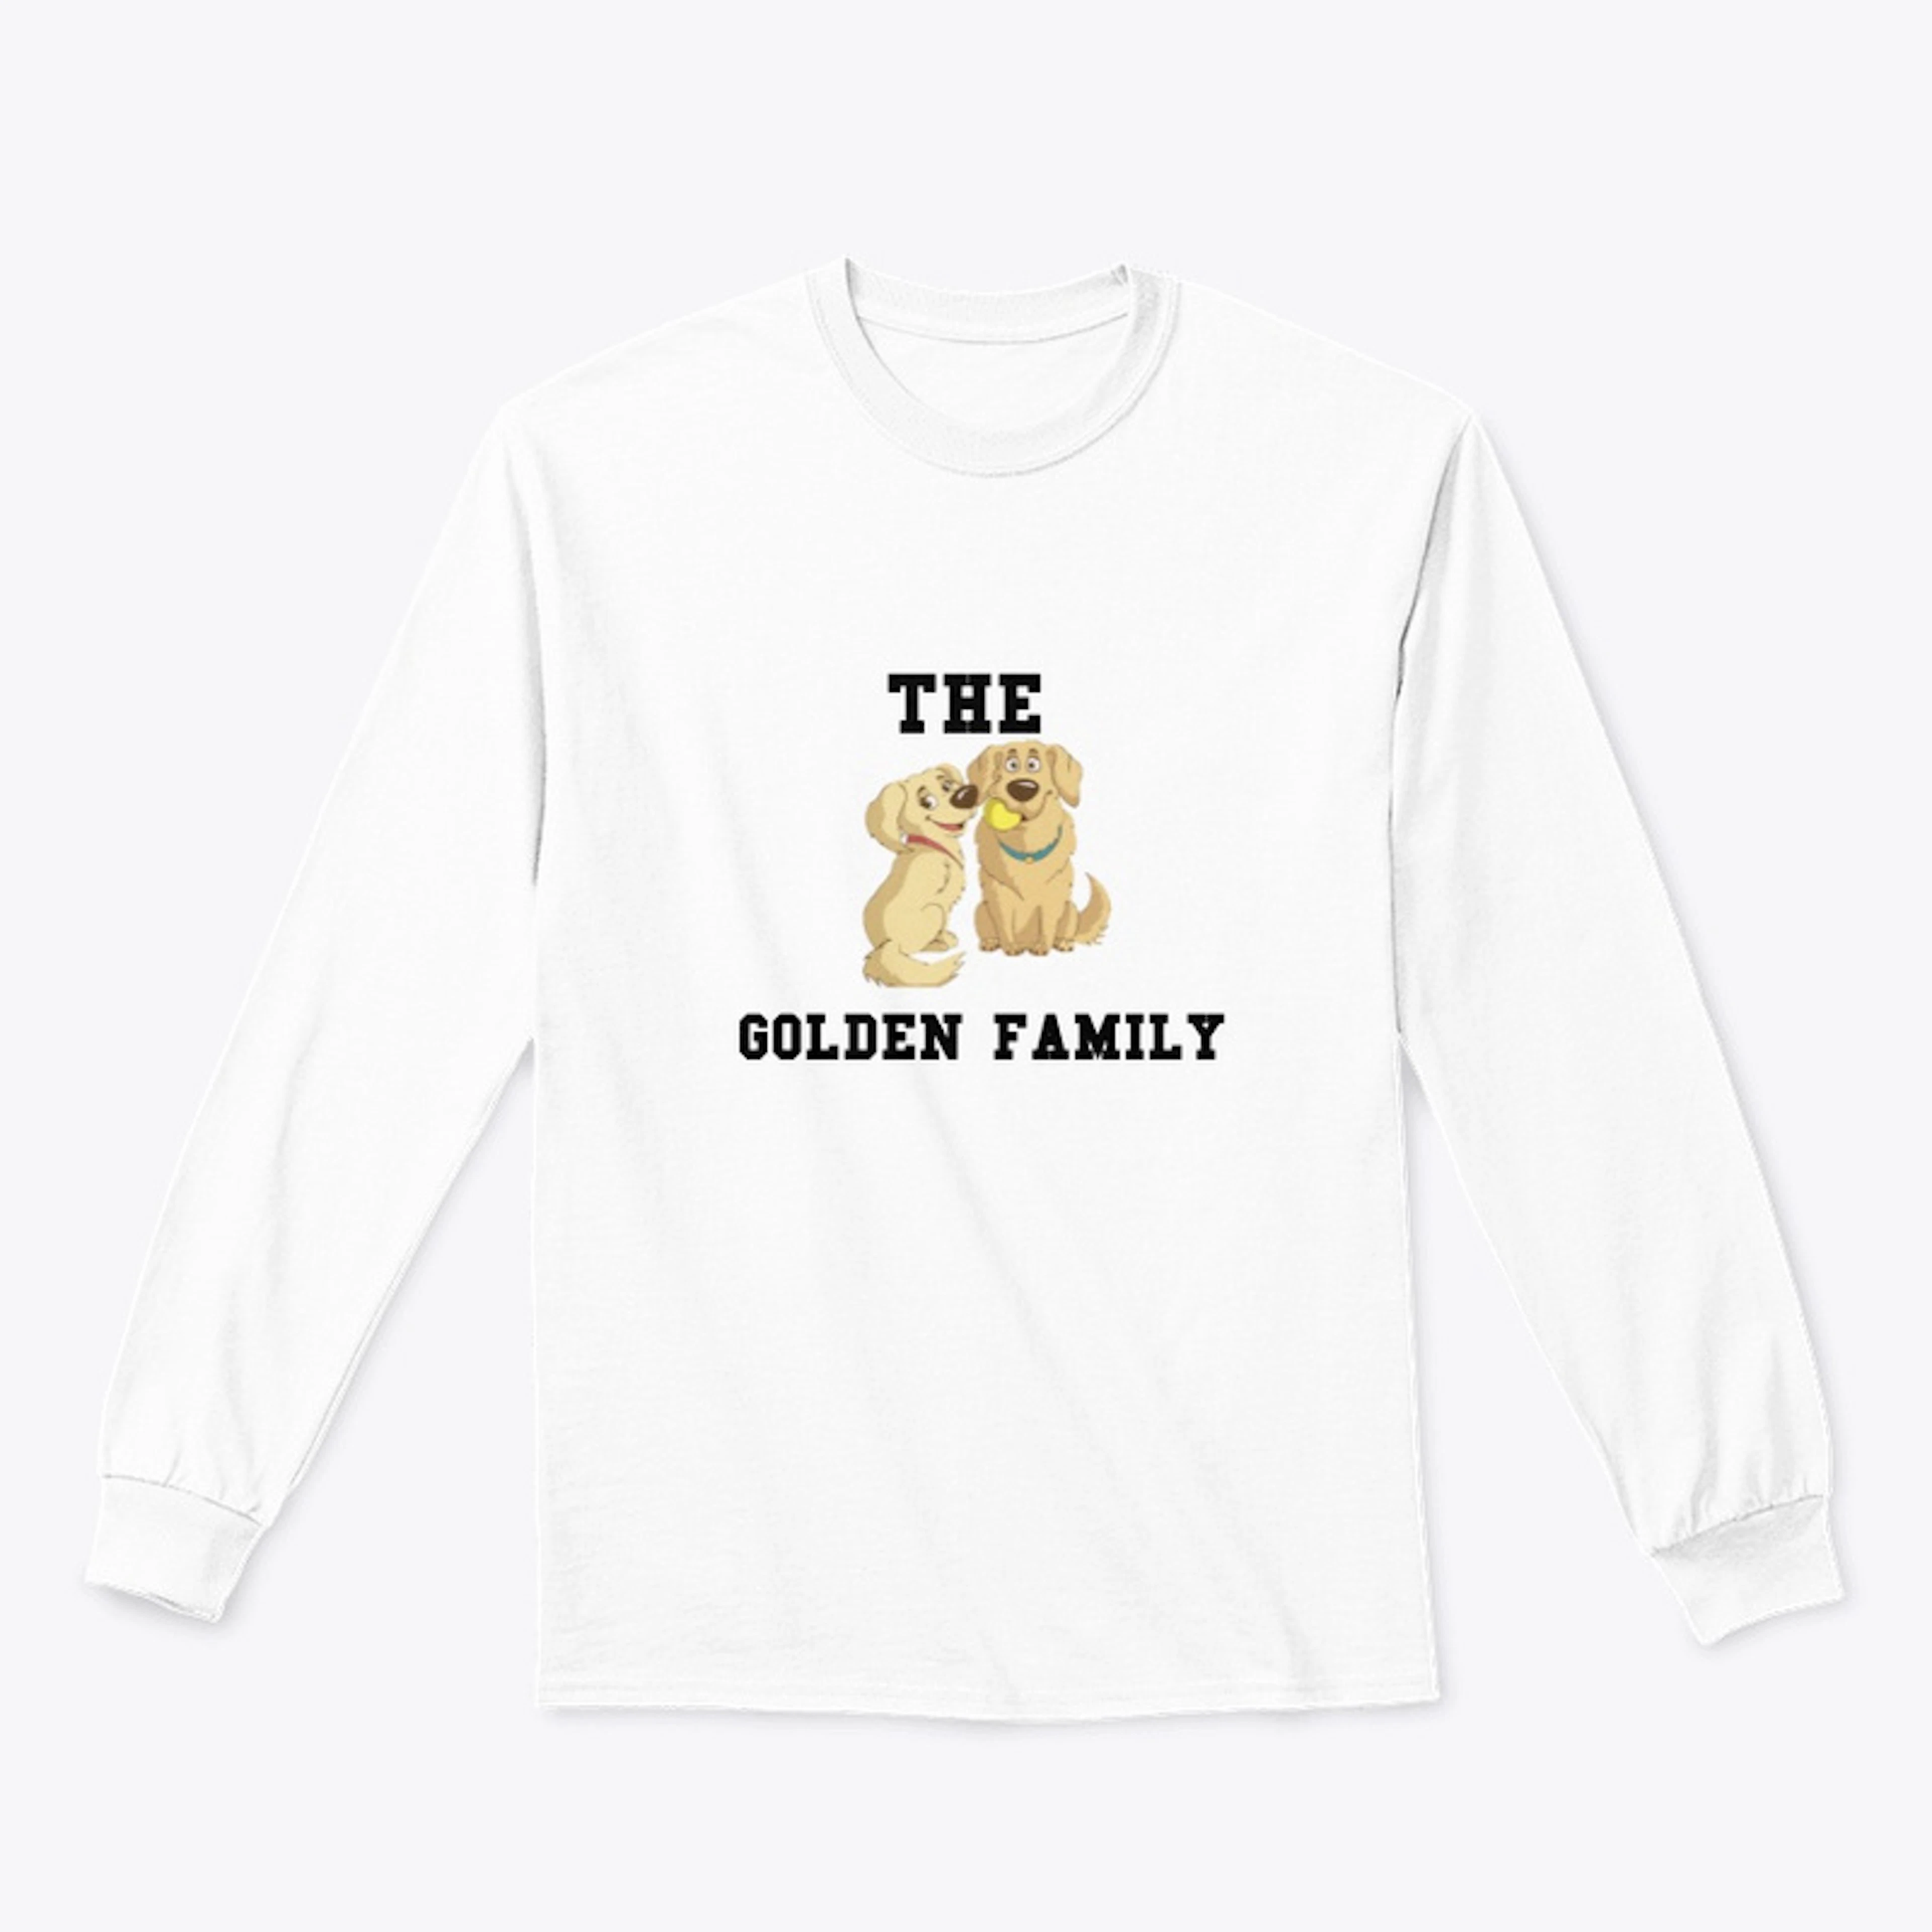 GOLDEN FAMILY